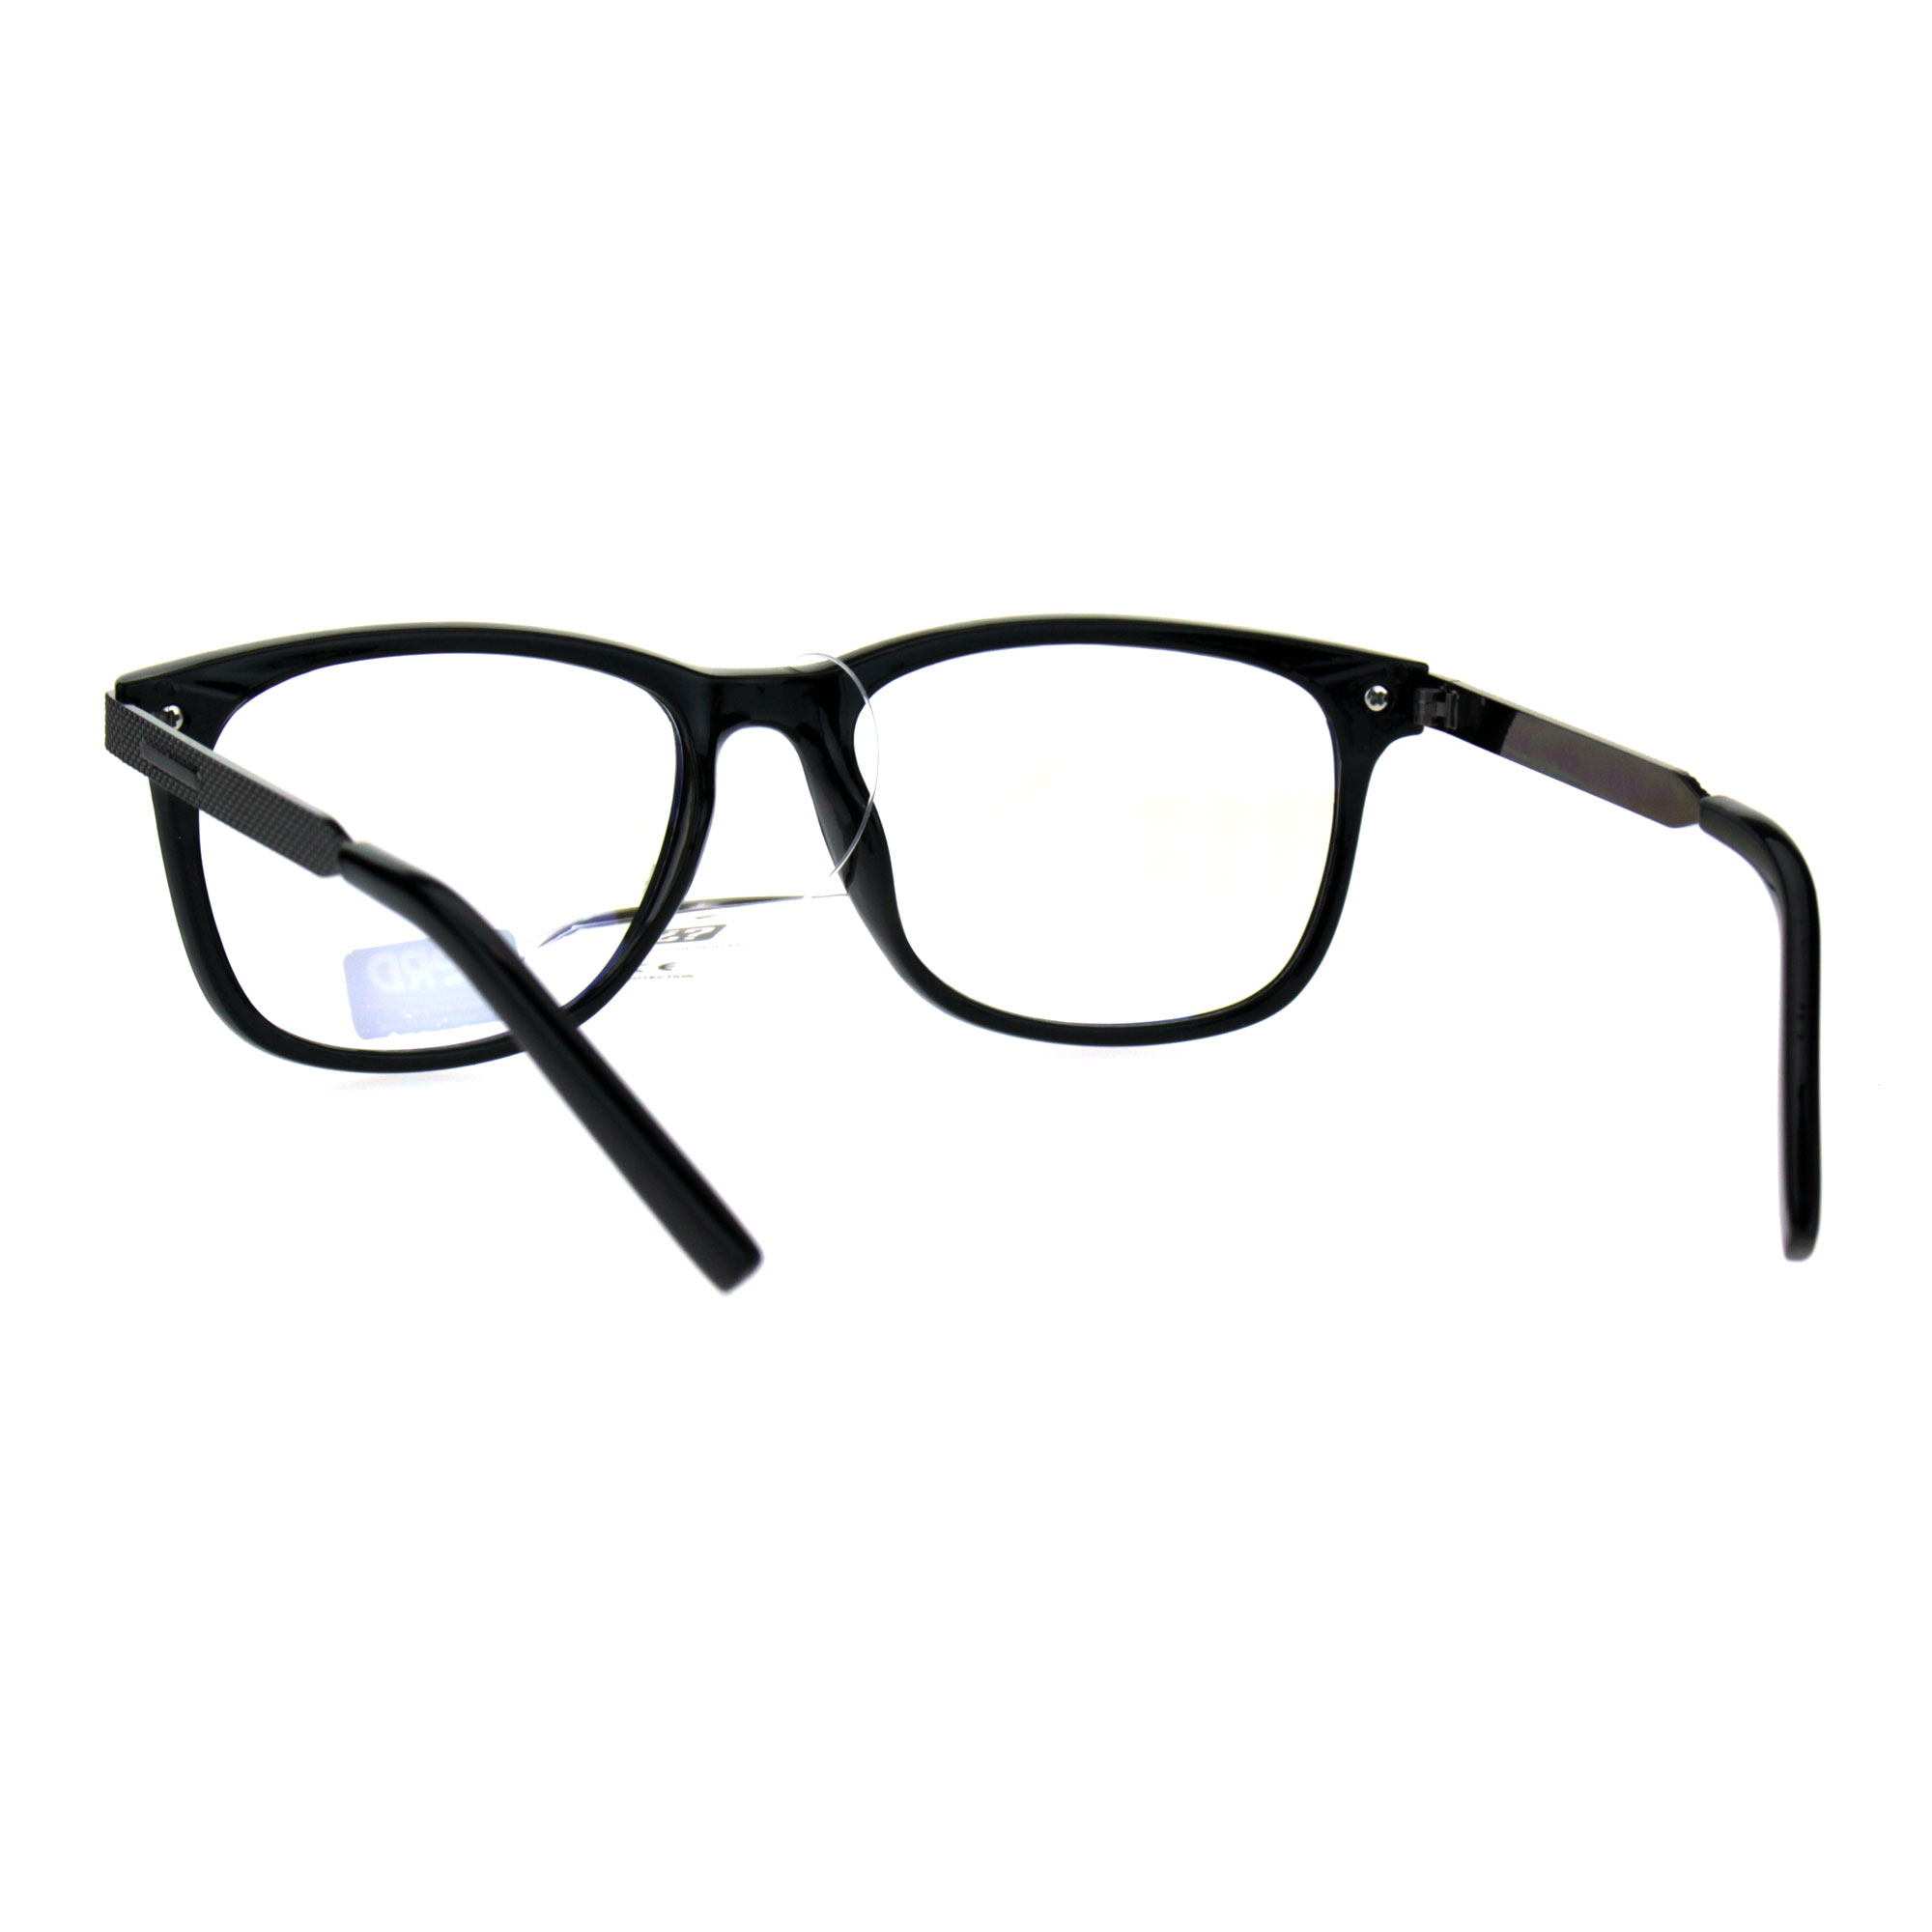 Mens Nerd Narrow Rectangular Plastic Horned Clear Lens Eyeglasses | eBay